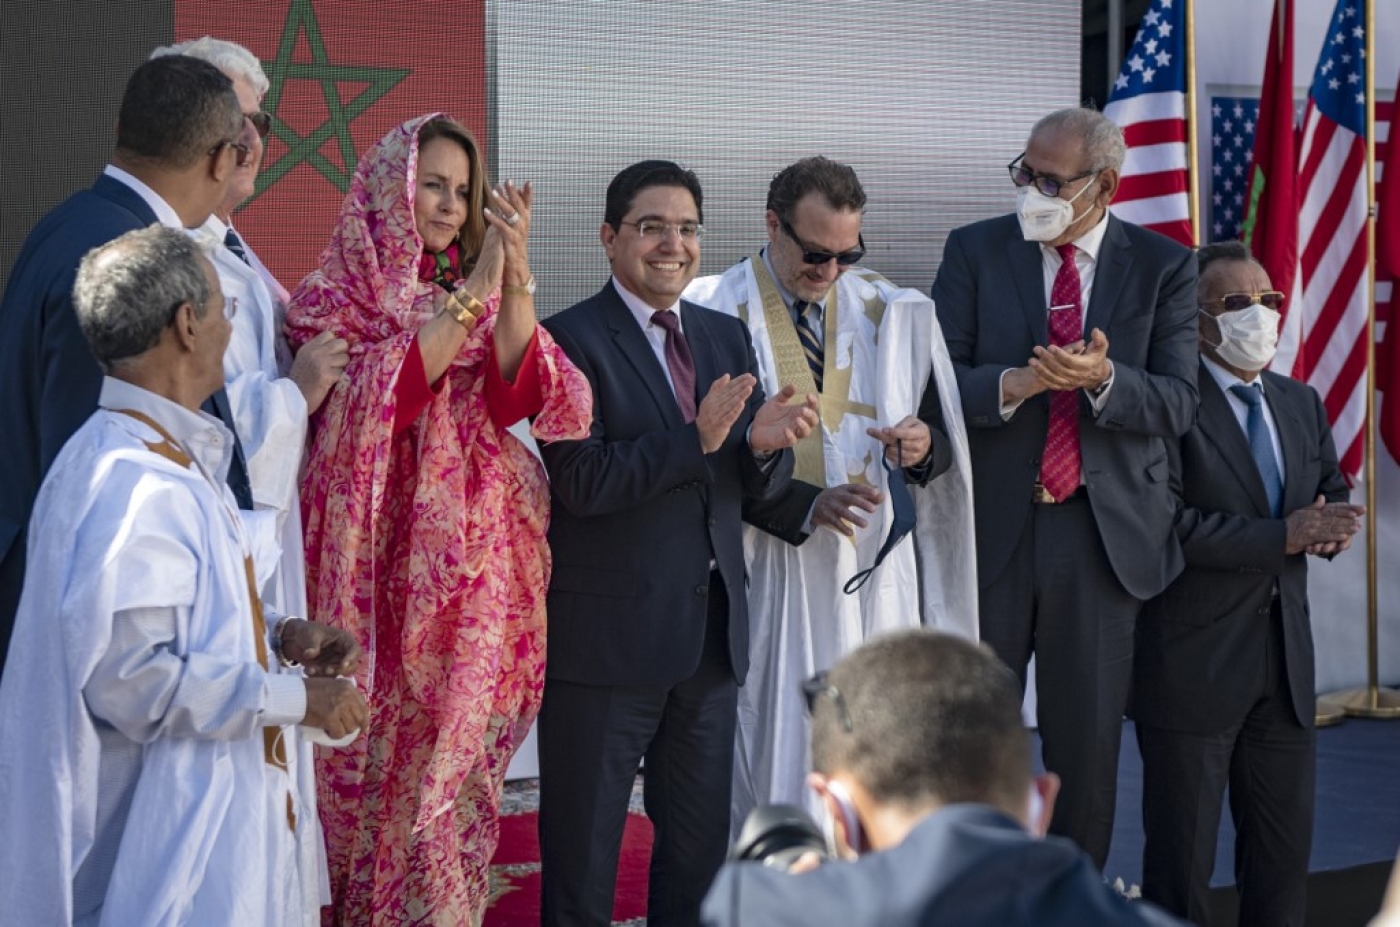 Le ministre marocain des Affaires étrangères Nasser Bourita (au centre) et David Schenker, secrétaire d’État américain adjoint pour le Proche-Orient et l’Afrique du Nord posent avec d’autres responsables après leur réunion à Dakhla, au Sahara Occidental, le 10 janvier 2021 (AFP)